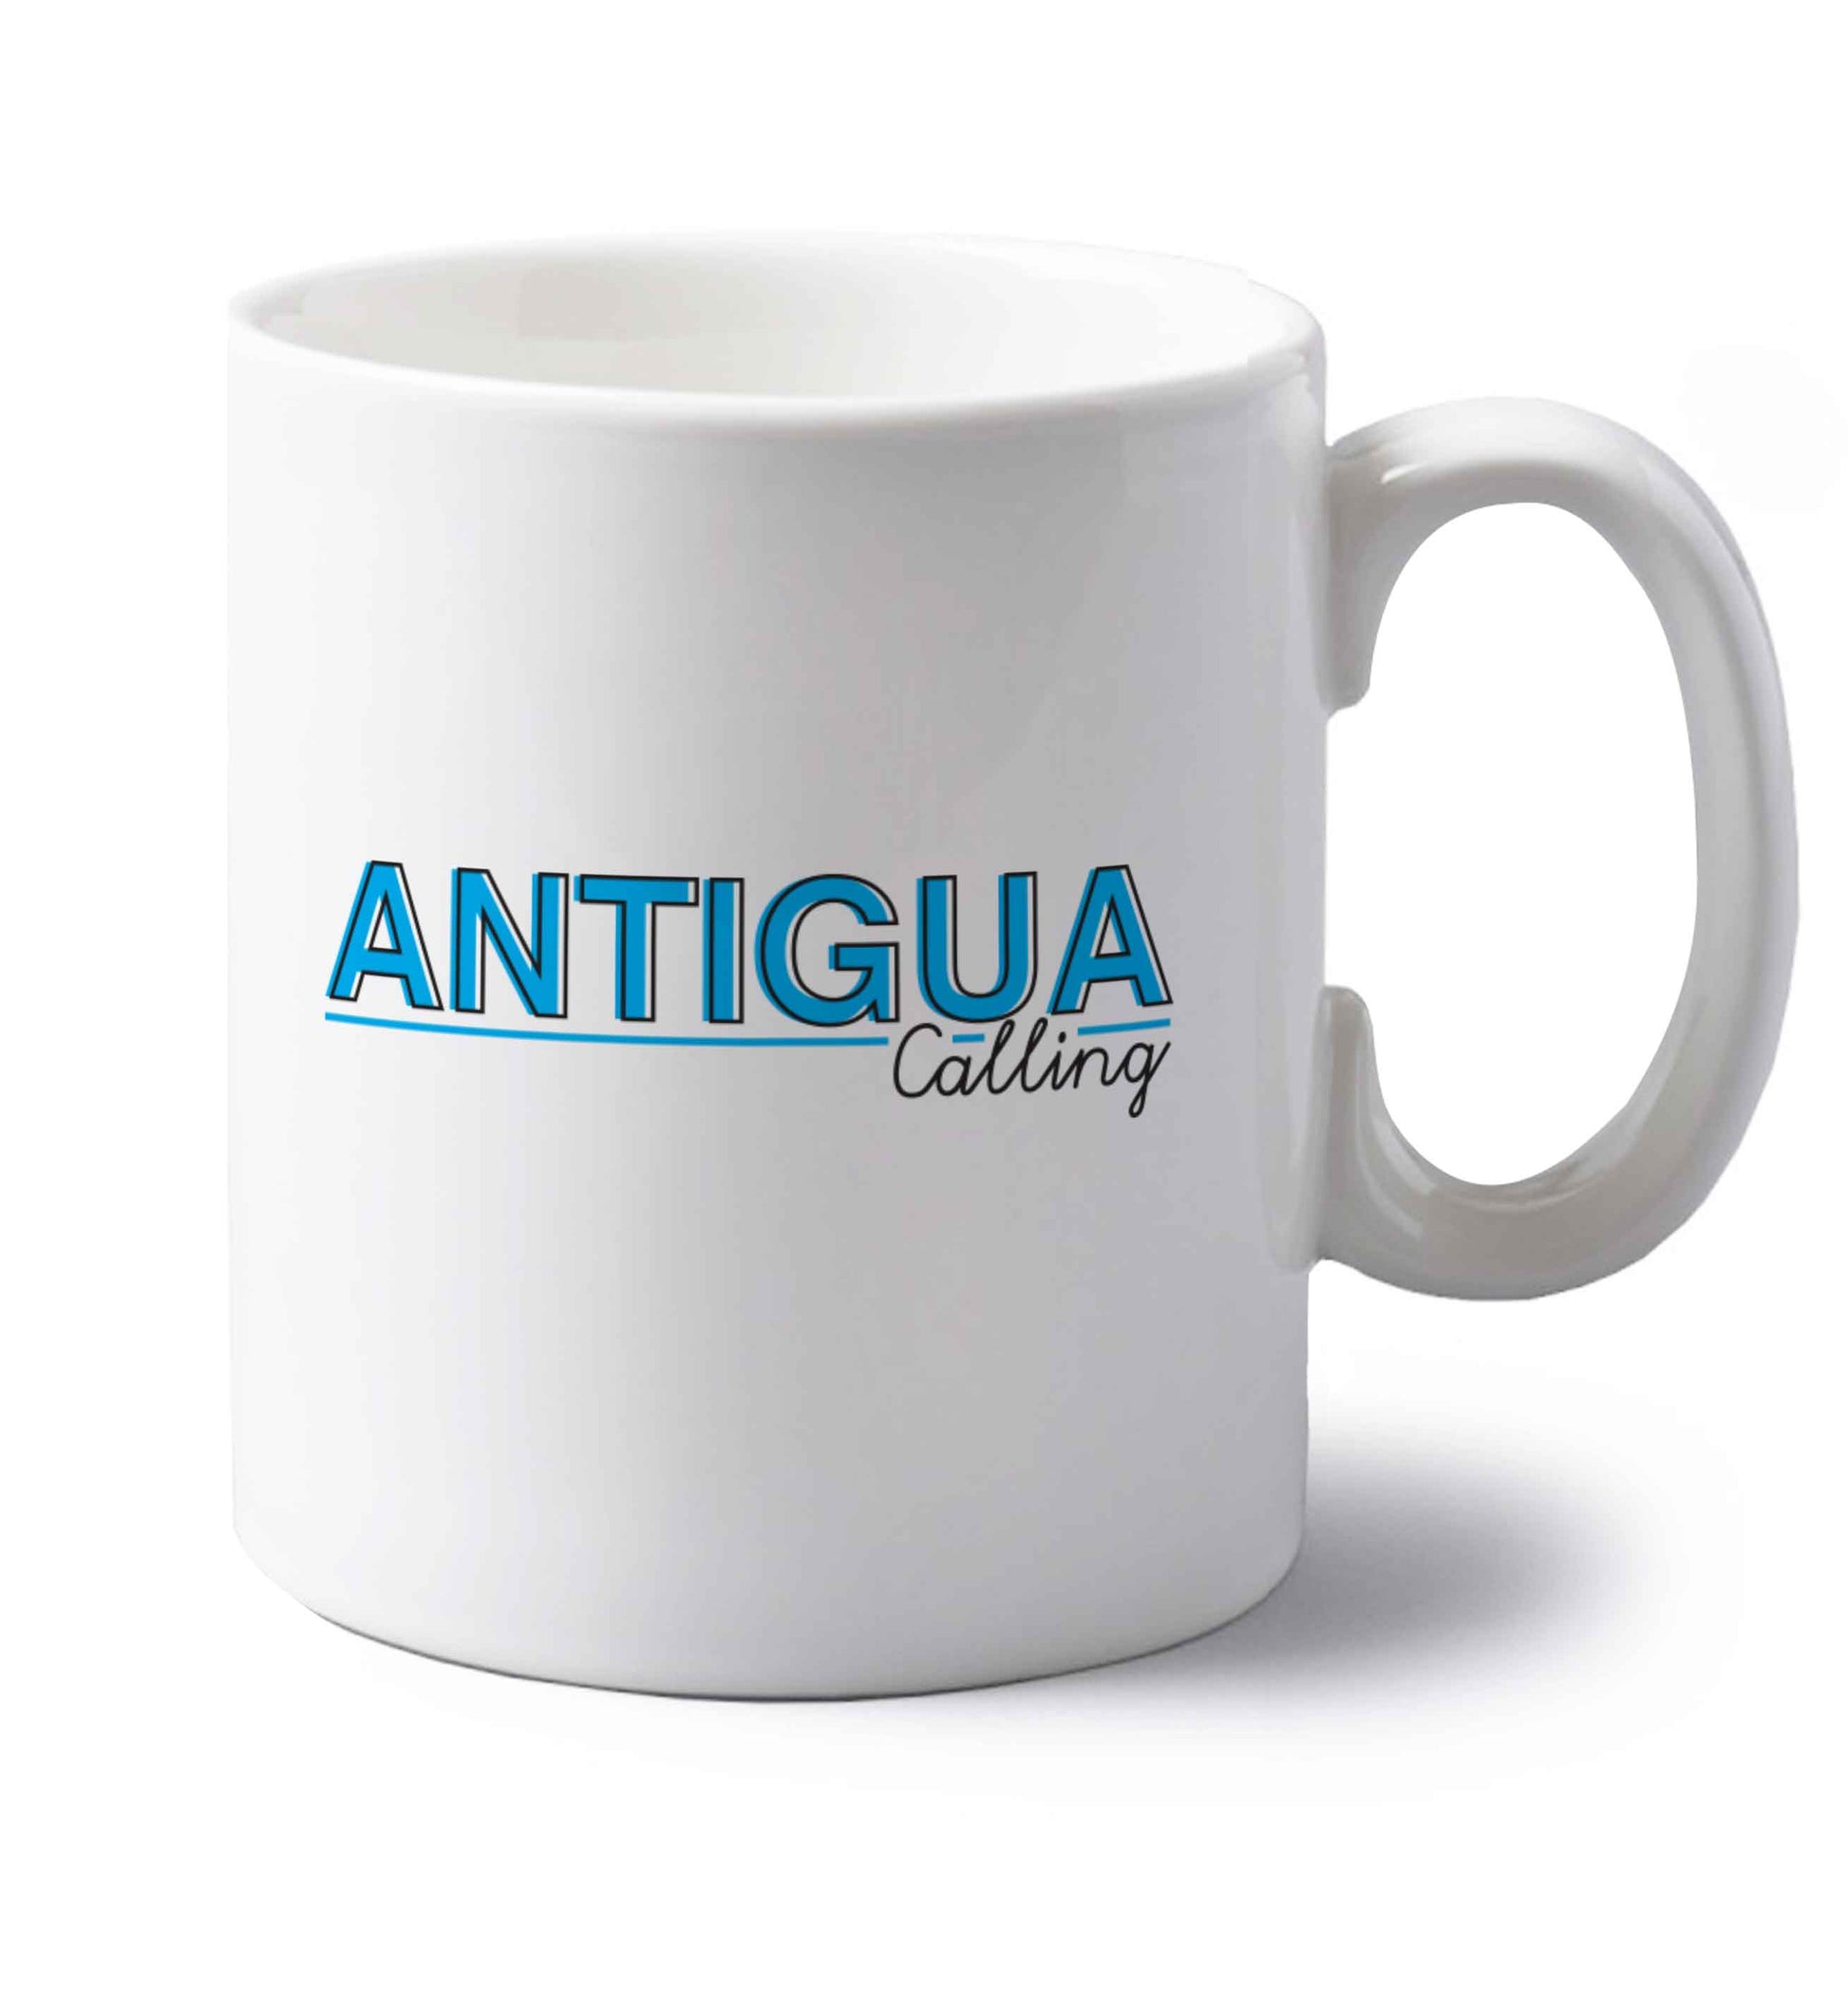 Antigua calling left handed white ceramic mug 